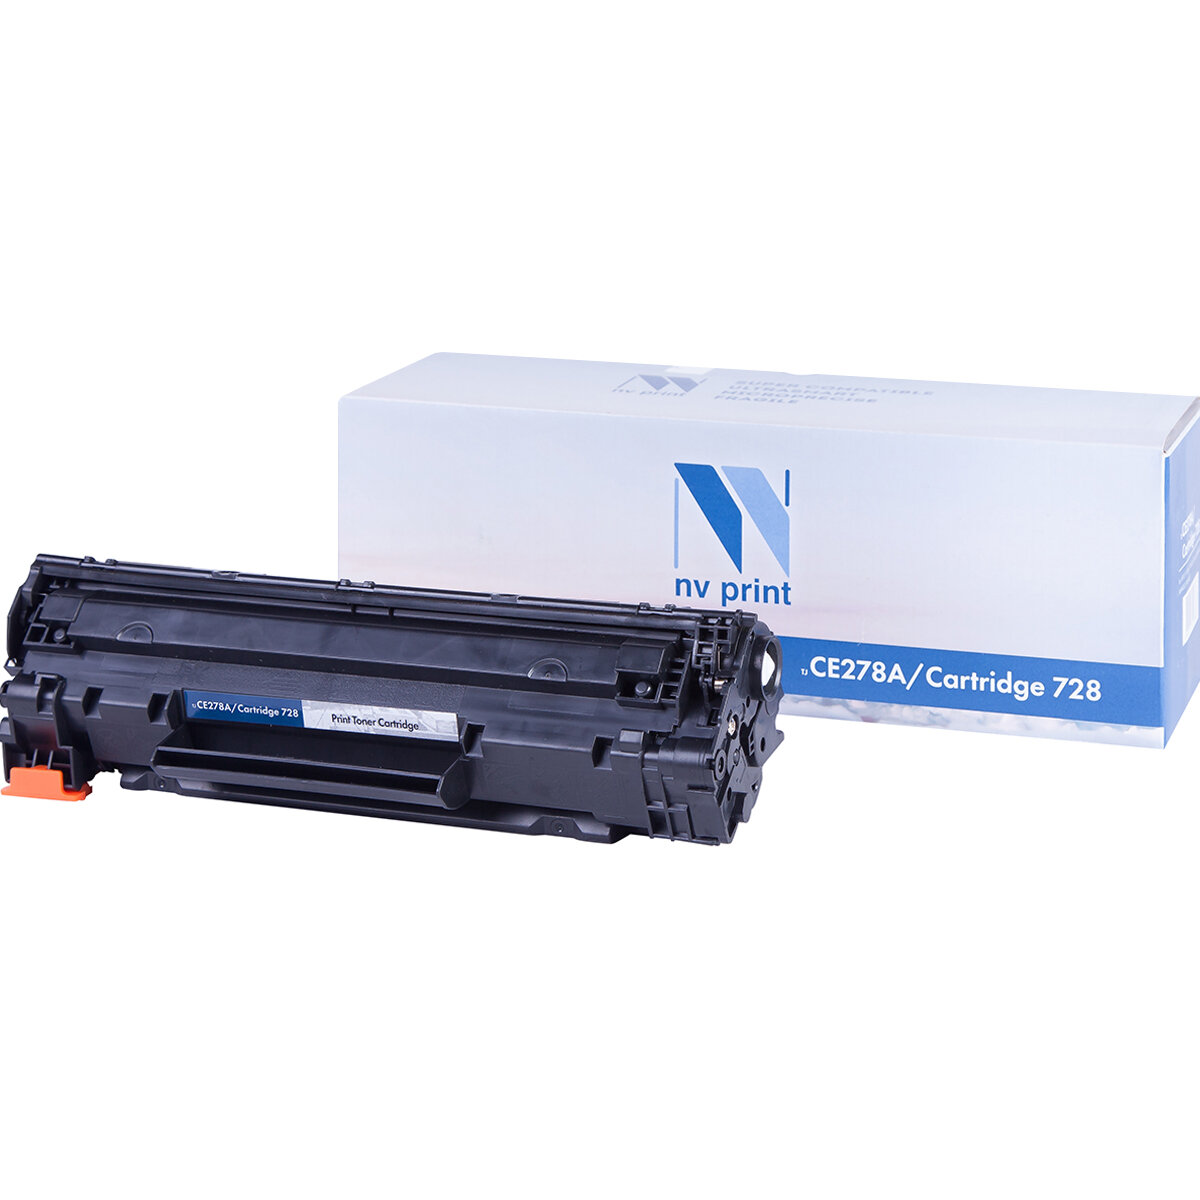 Совместимый картридж NV Print NV-CE278A/728 (NV-CE278A-728) для HP LaserJet Pro P1566, M1536dnf, P1606dn, Canon MF4580, 4570